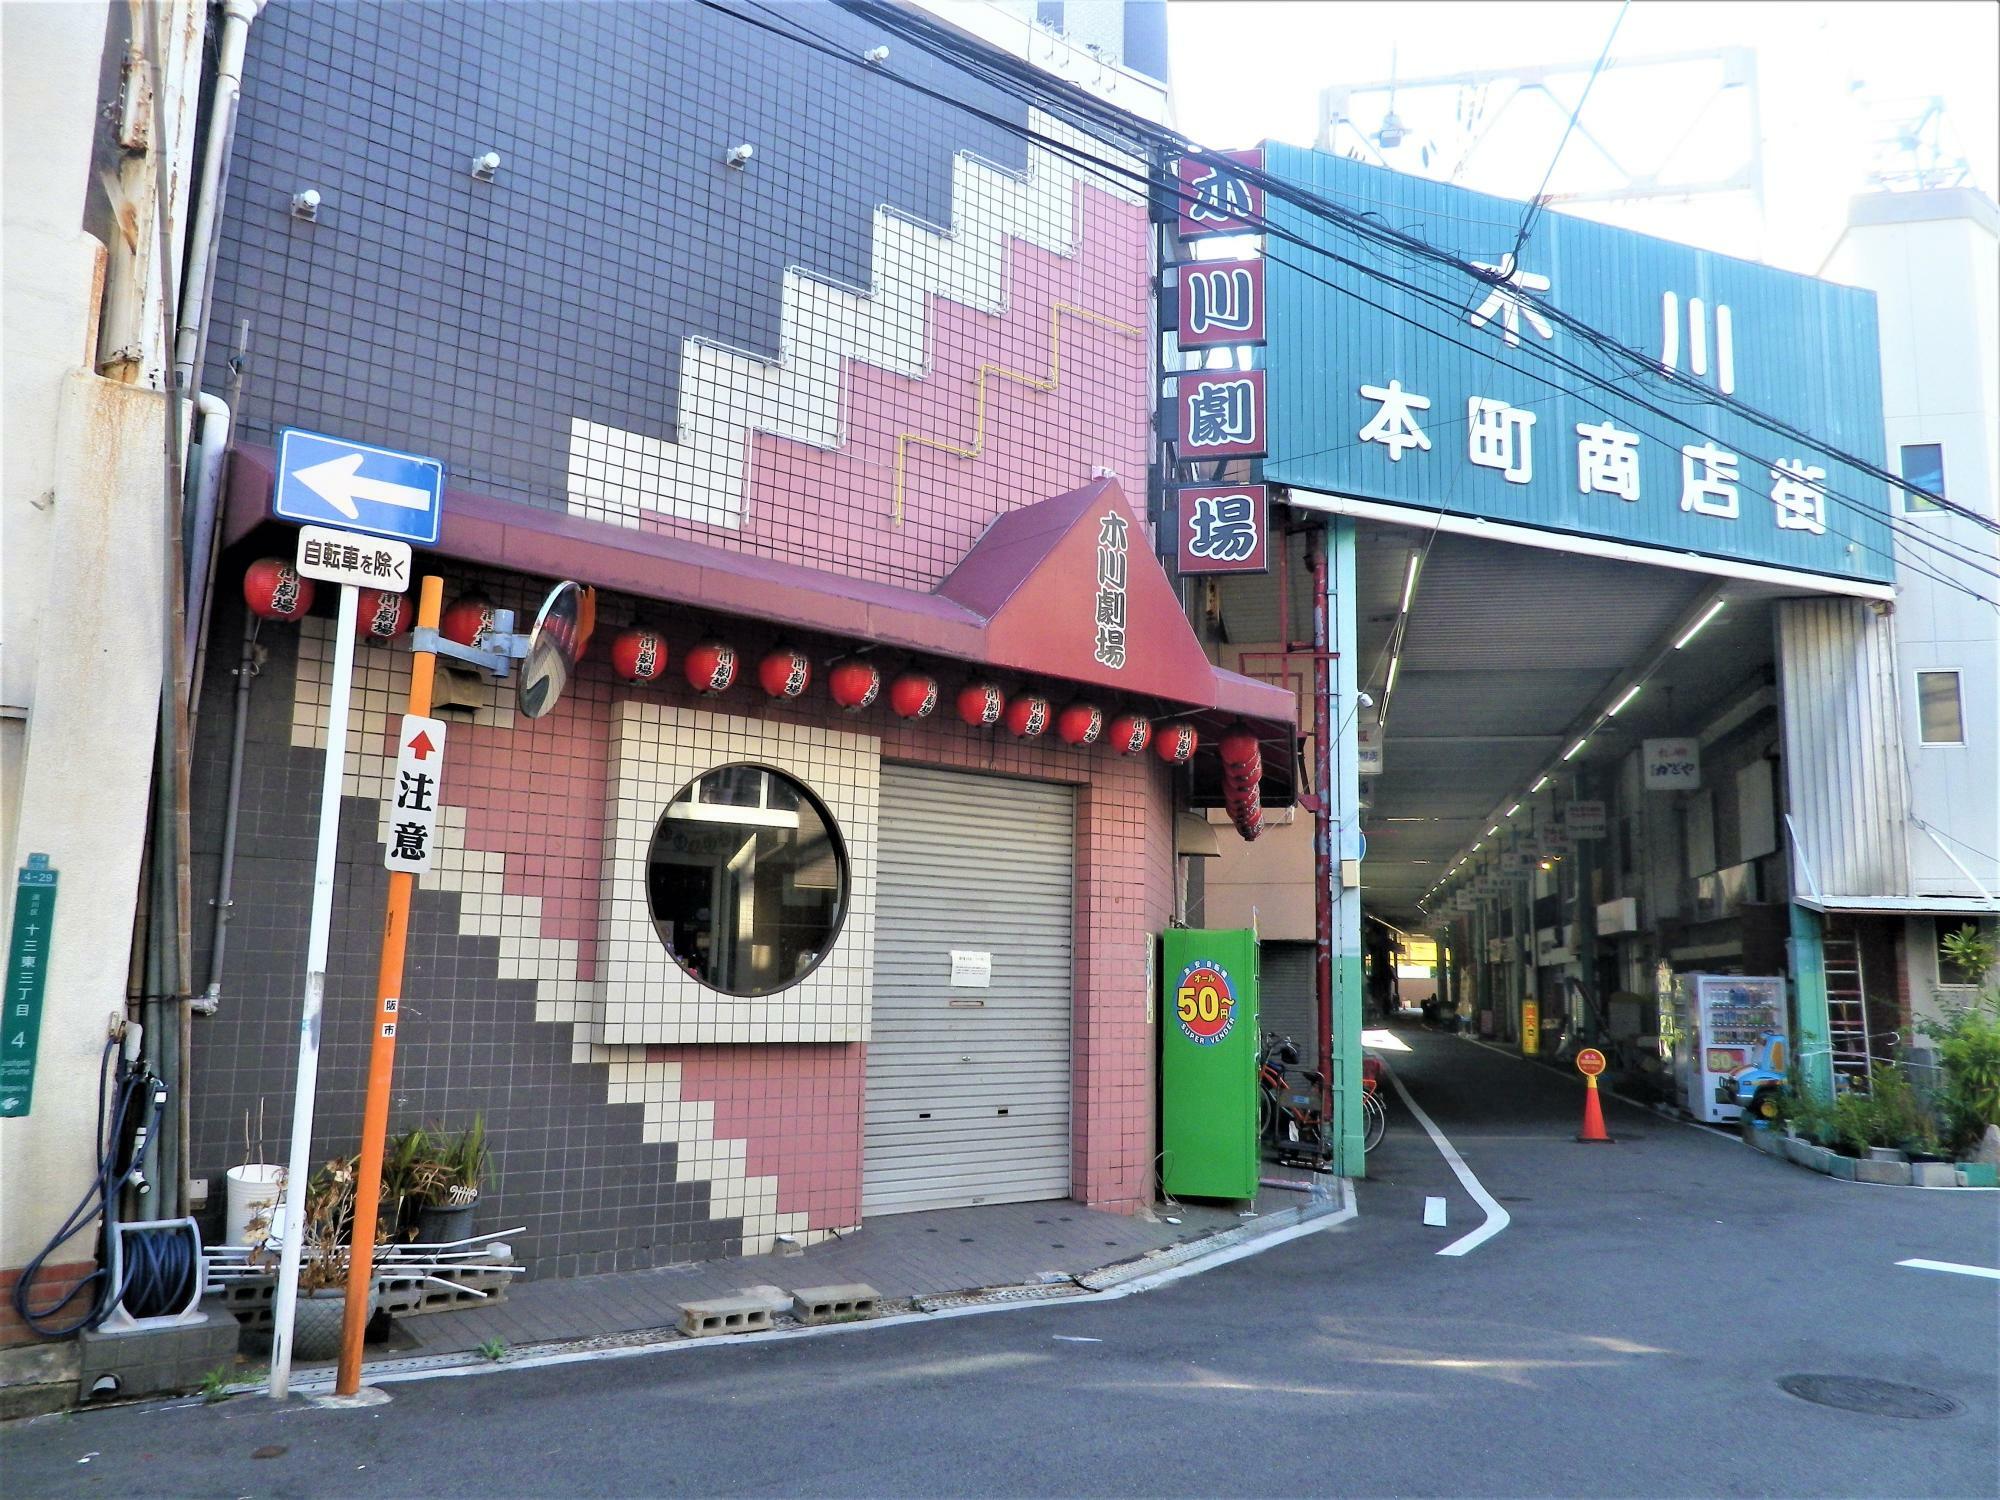 昭和レトロ風だった外壁のタイルデザイン。